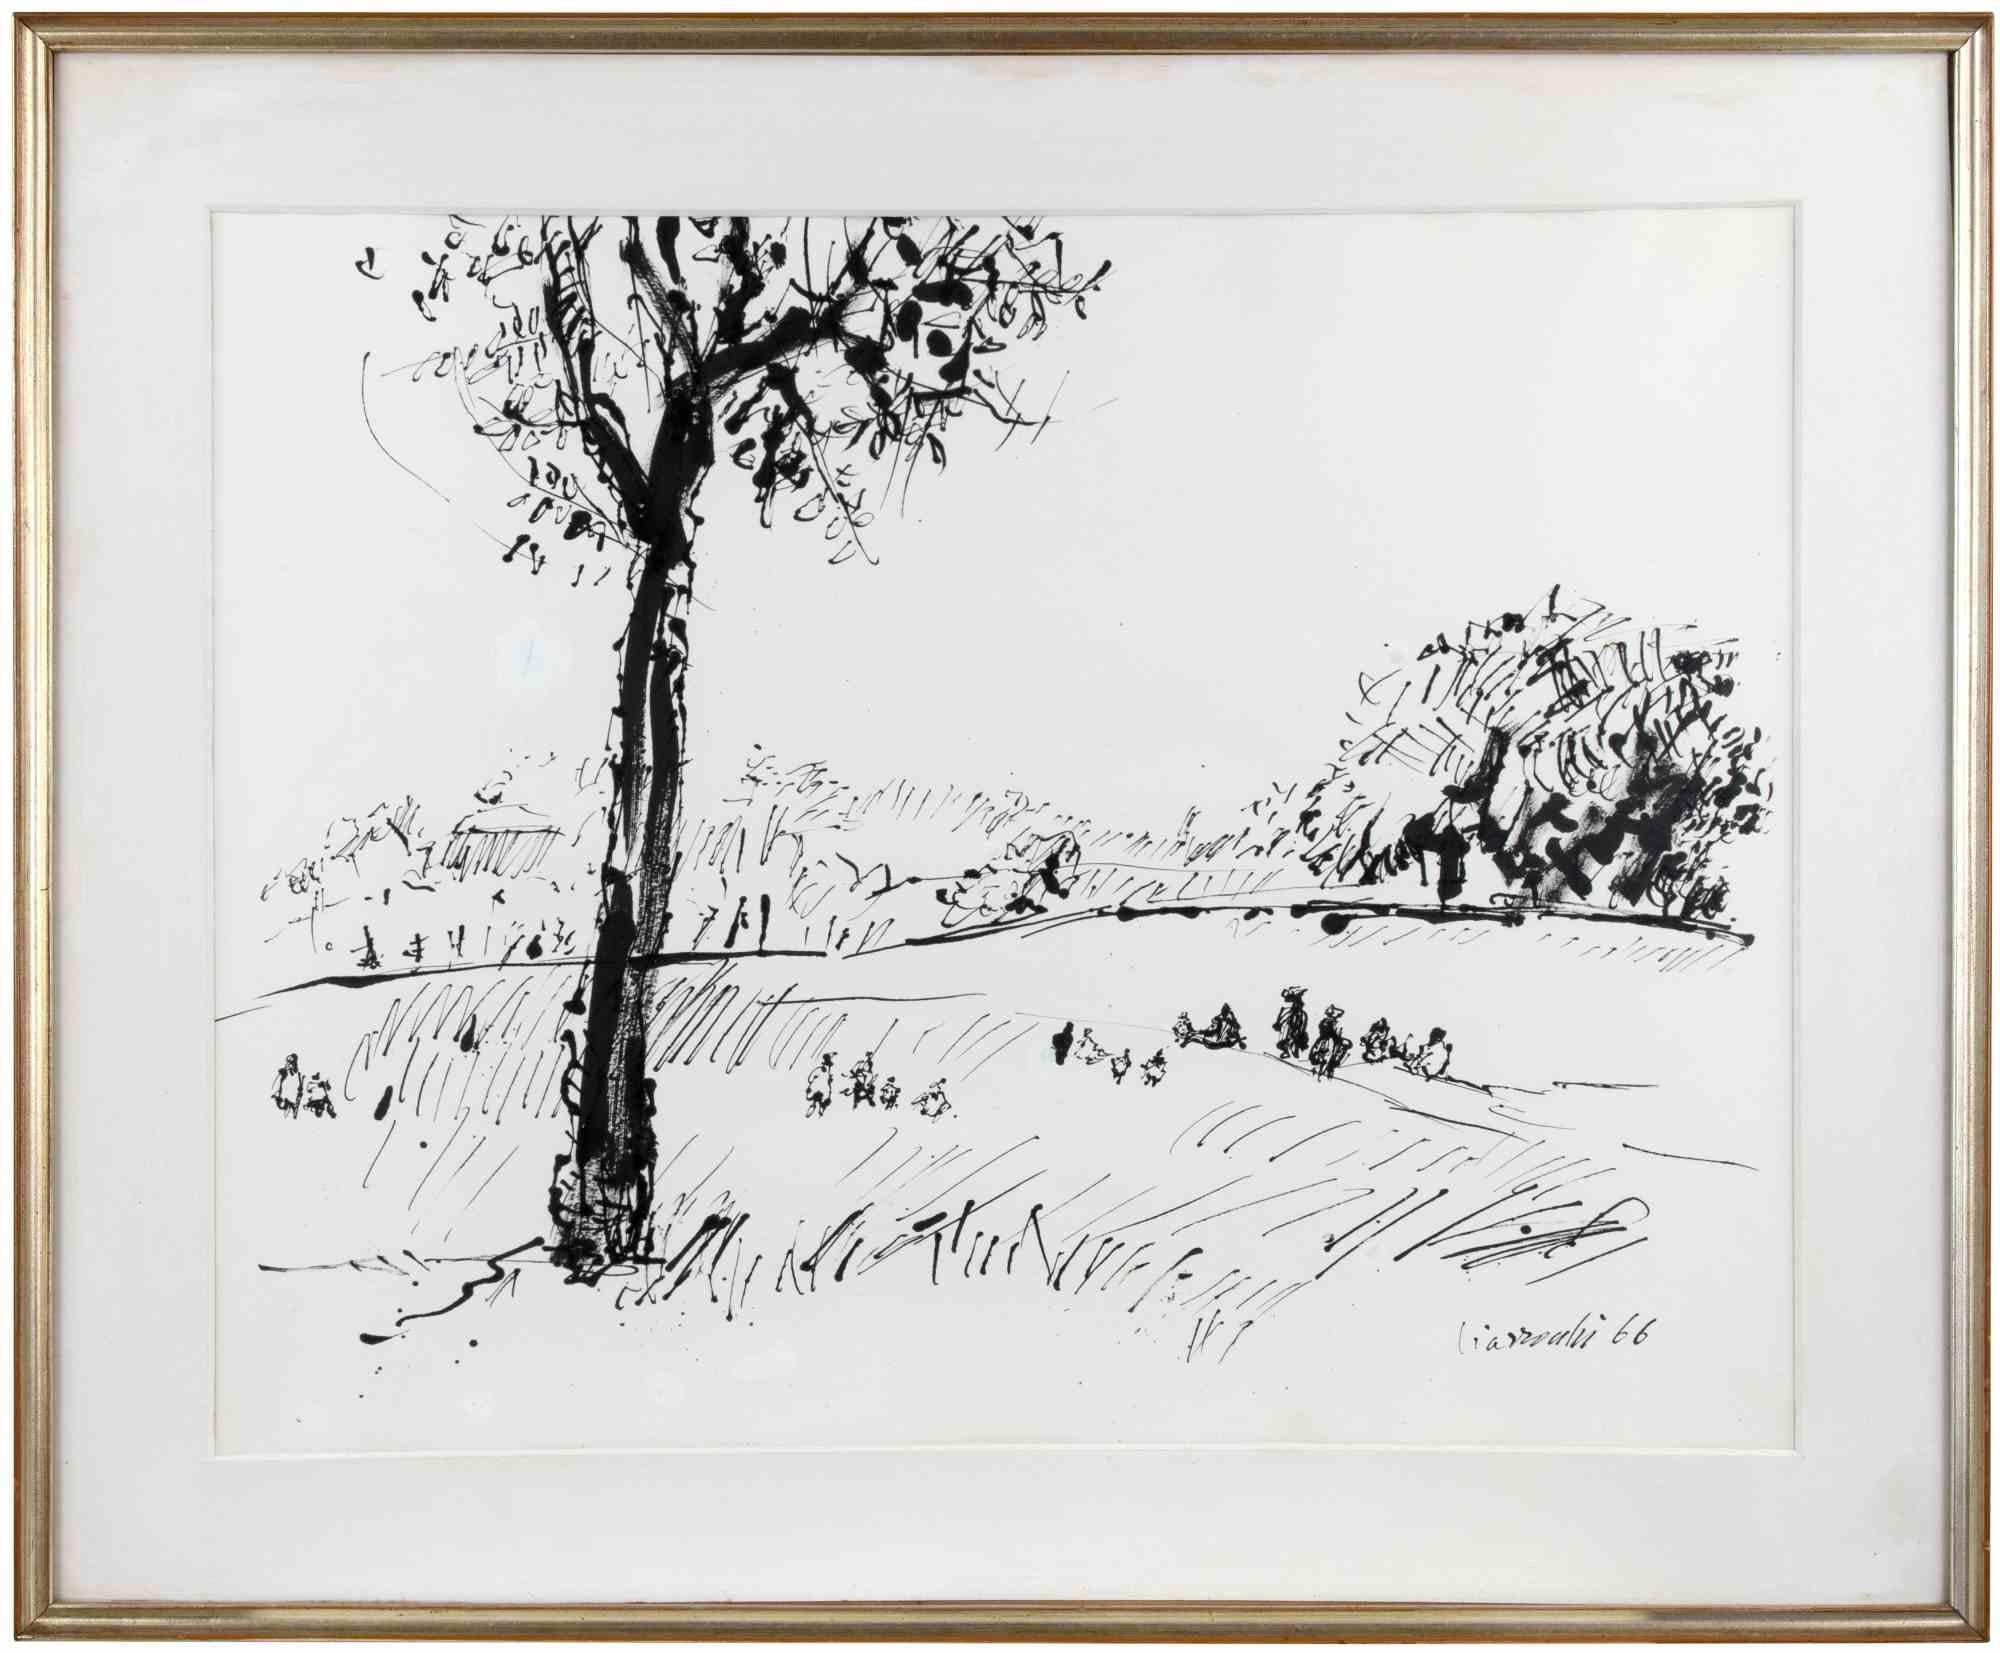 Landscape ist ein modernes Kunstwerk von Arnoldo Ciarrocchi aus dem Jahr 1966.

China-Tusche Zeichnung auf Papier.

Am unteren Rand handsigniert und datiert.

Inklusive Rahmen